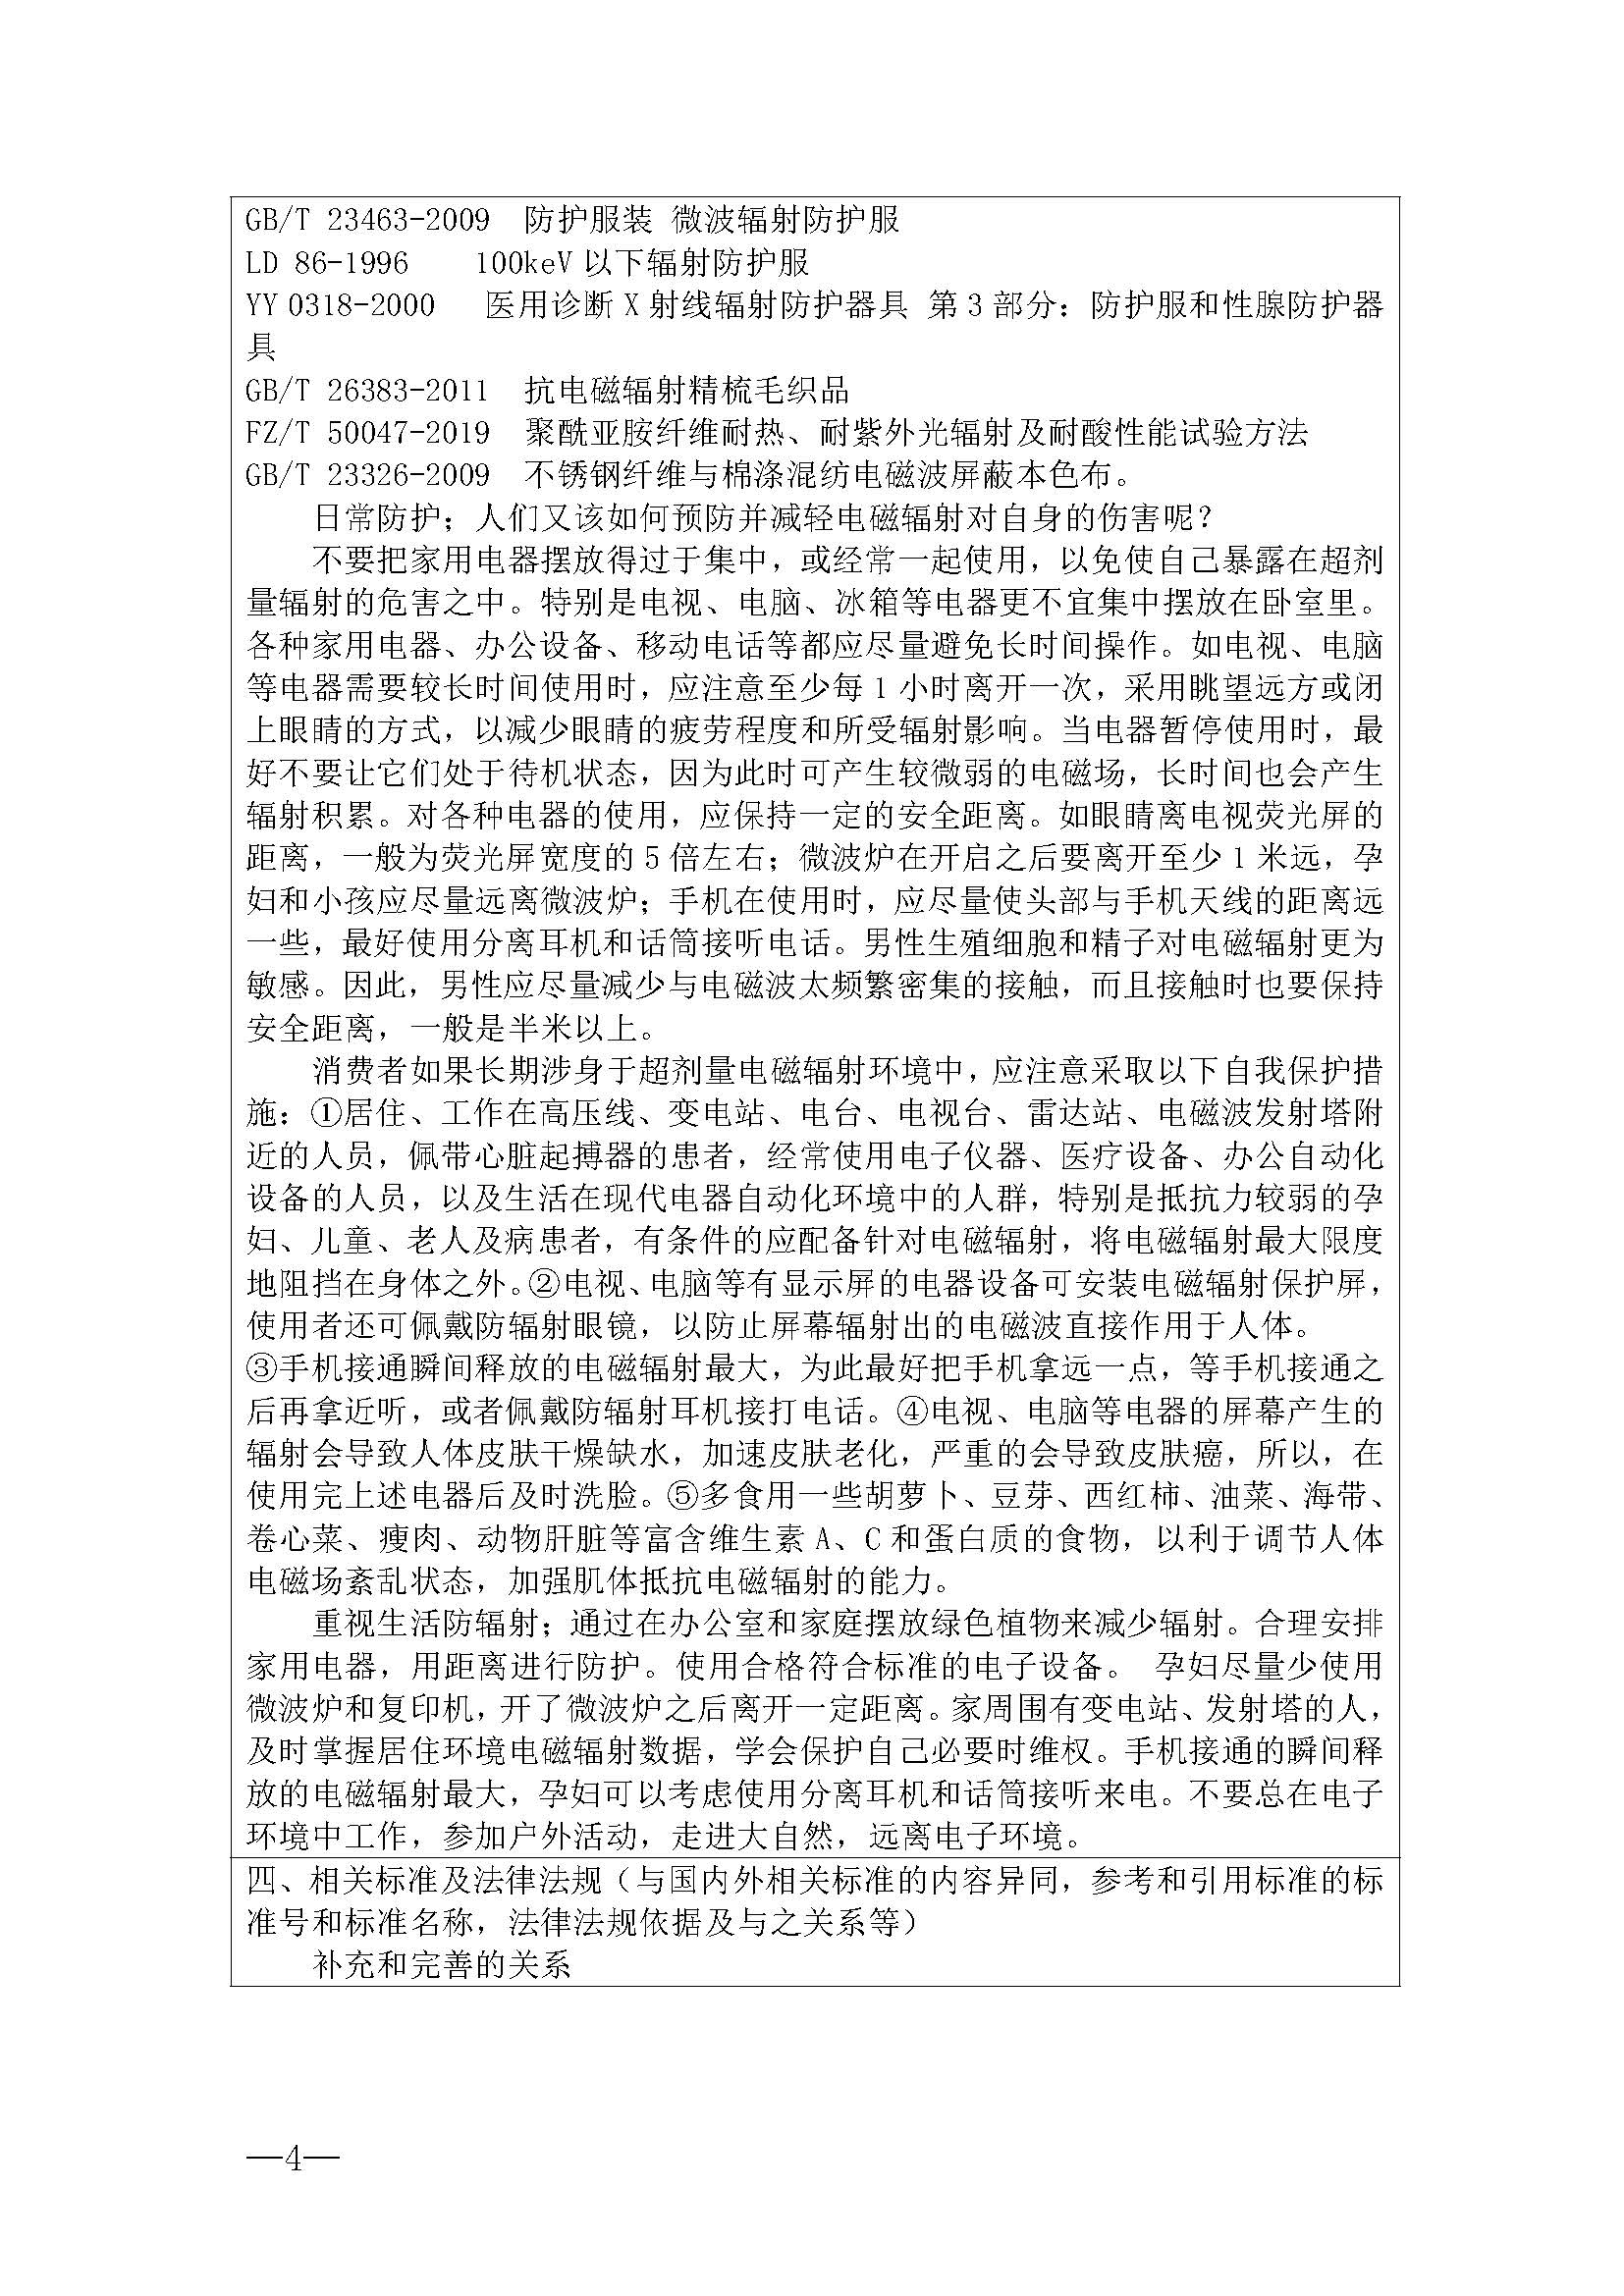 表2广东省纺织团体标准项目建议书-抗辐射内衣_页面_4.jpg